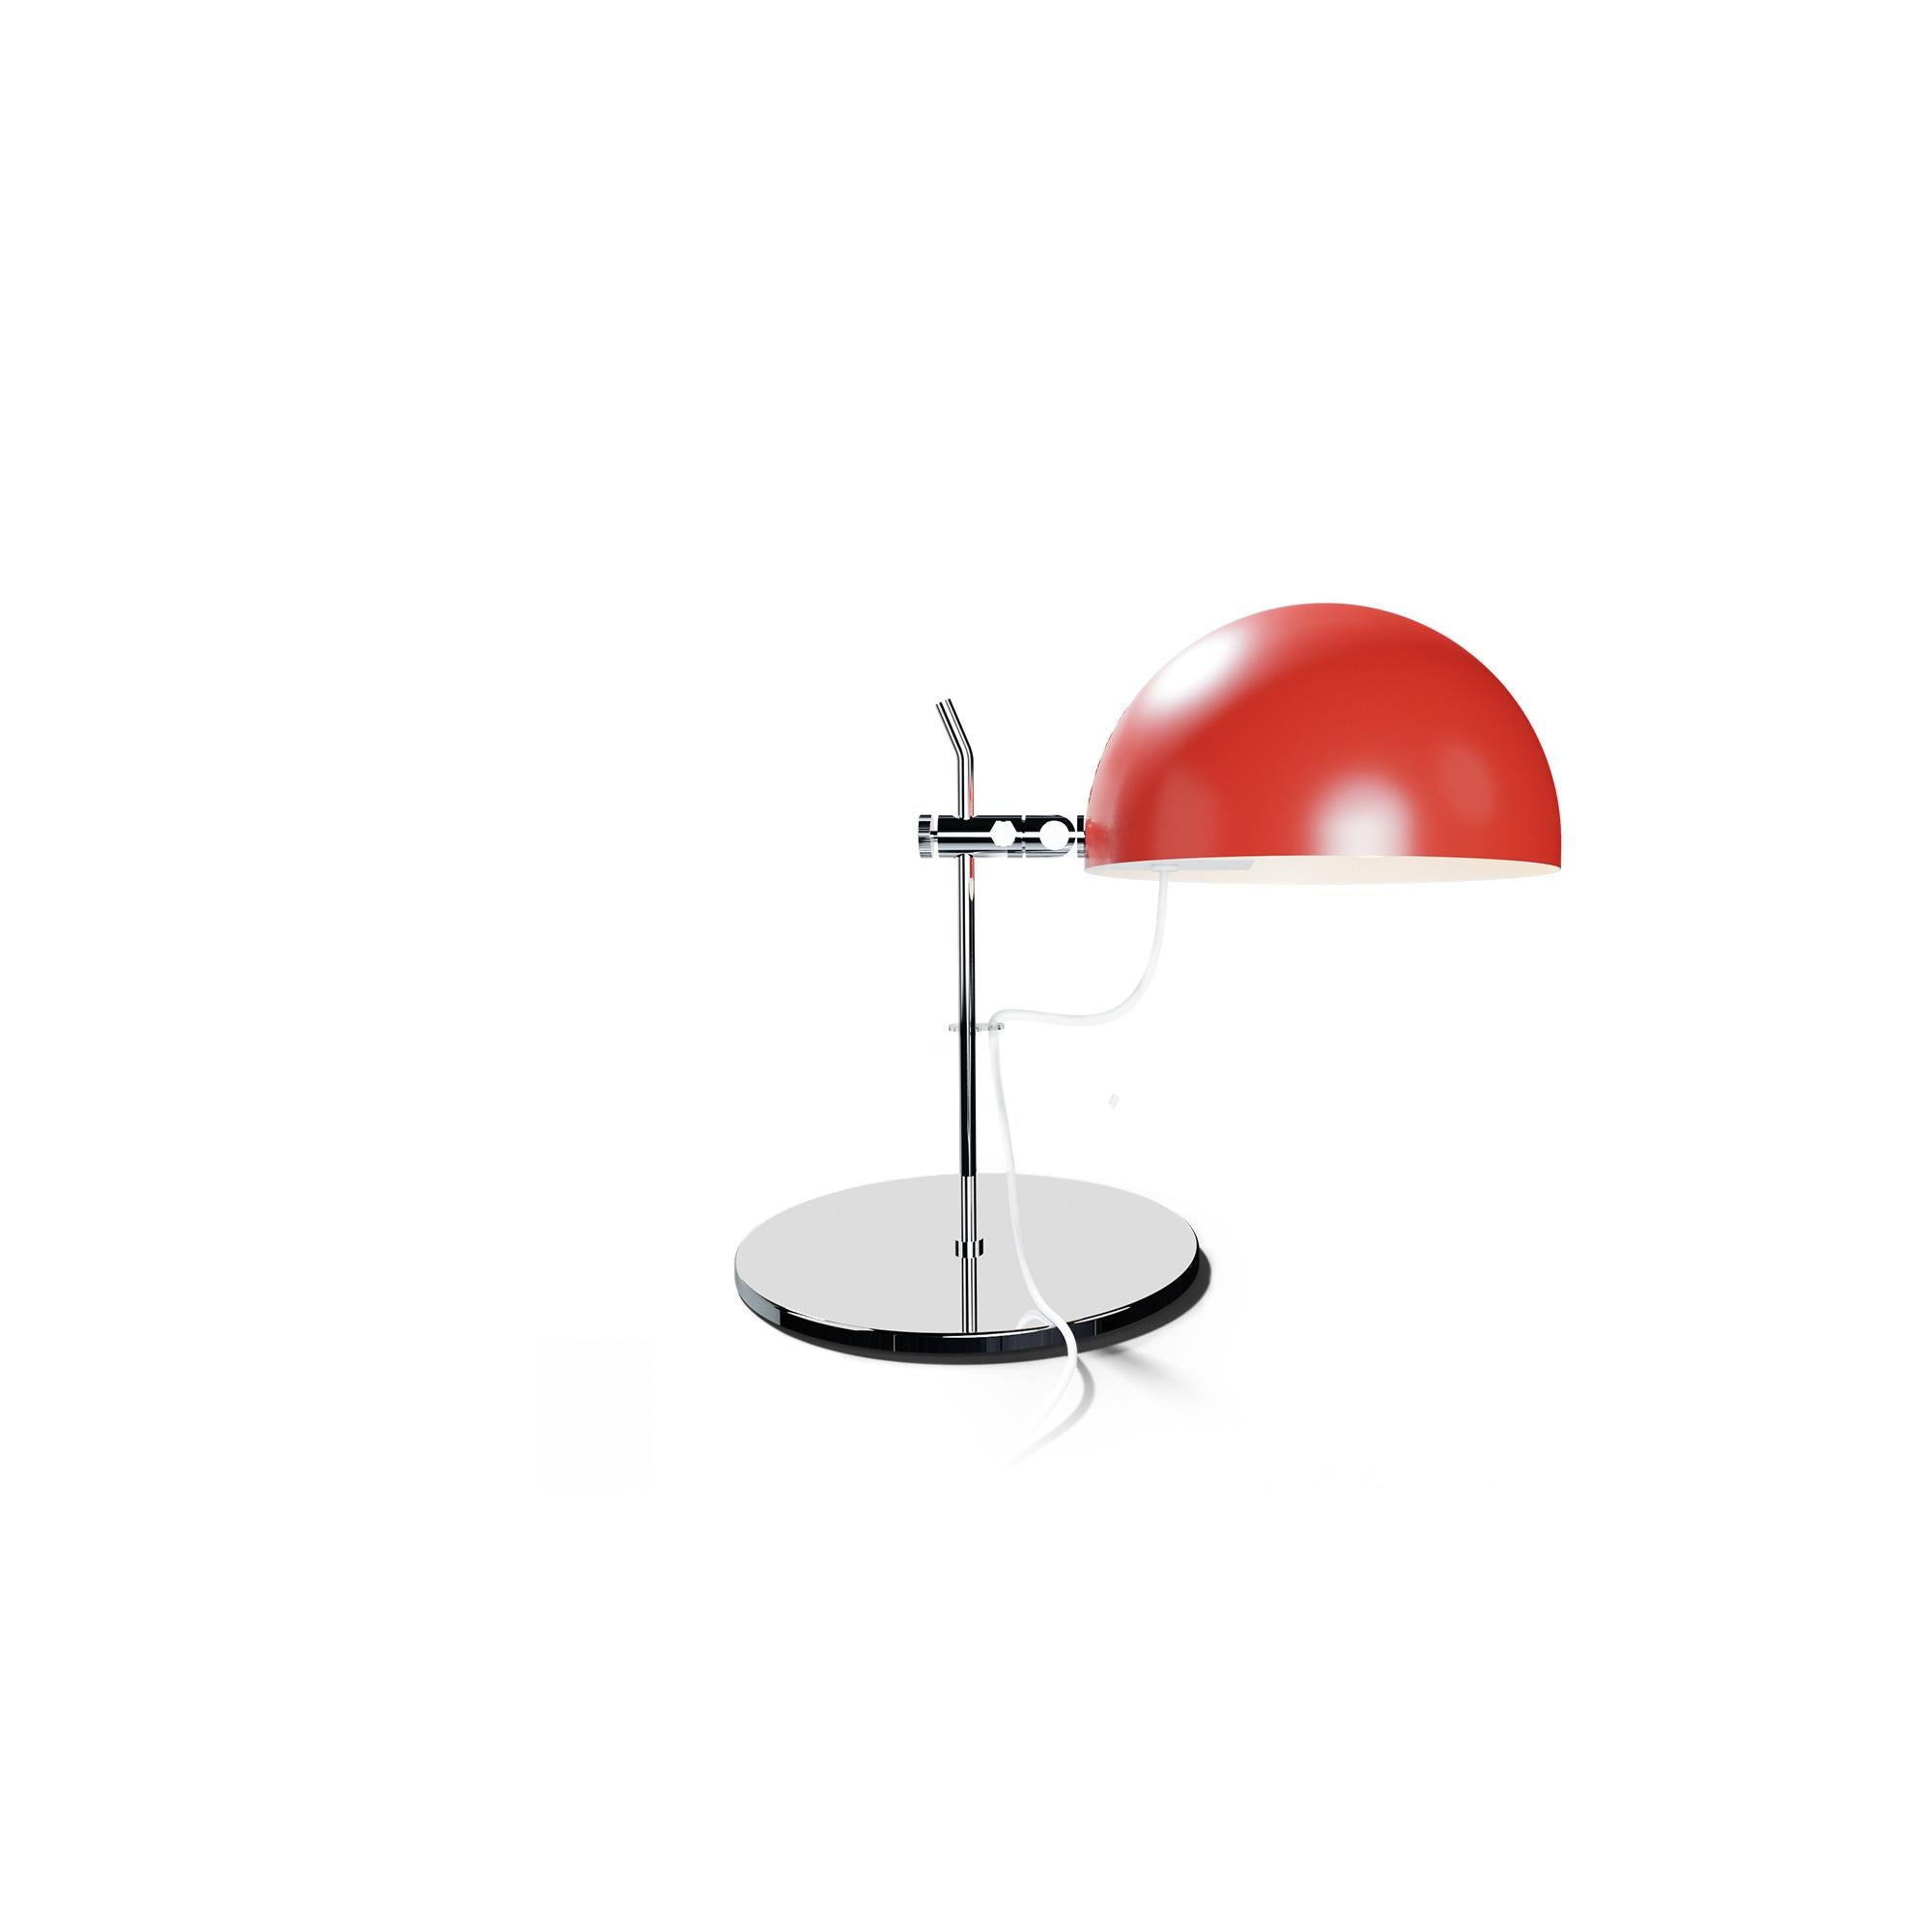 Alain Richard 'A22' Desk Lamp in Black for Disderot For Sale 8